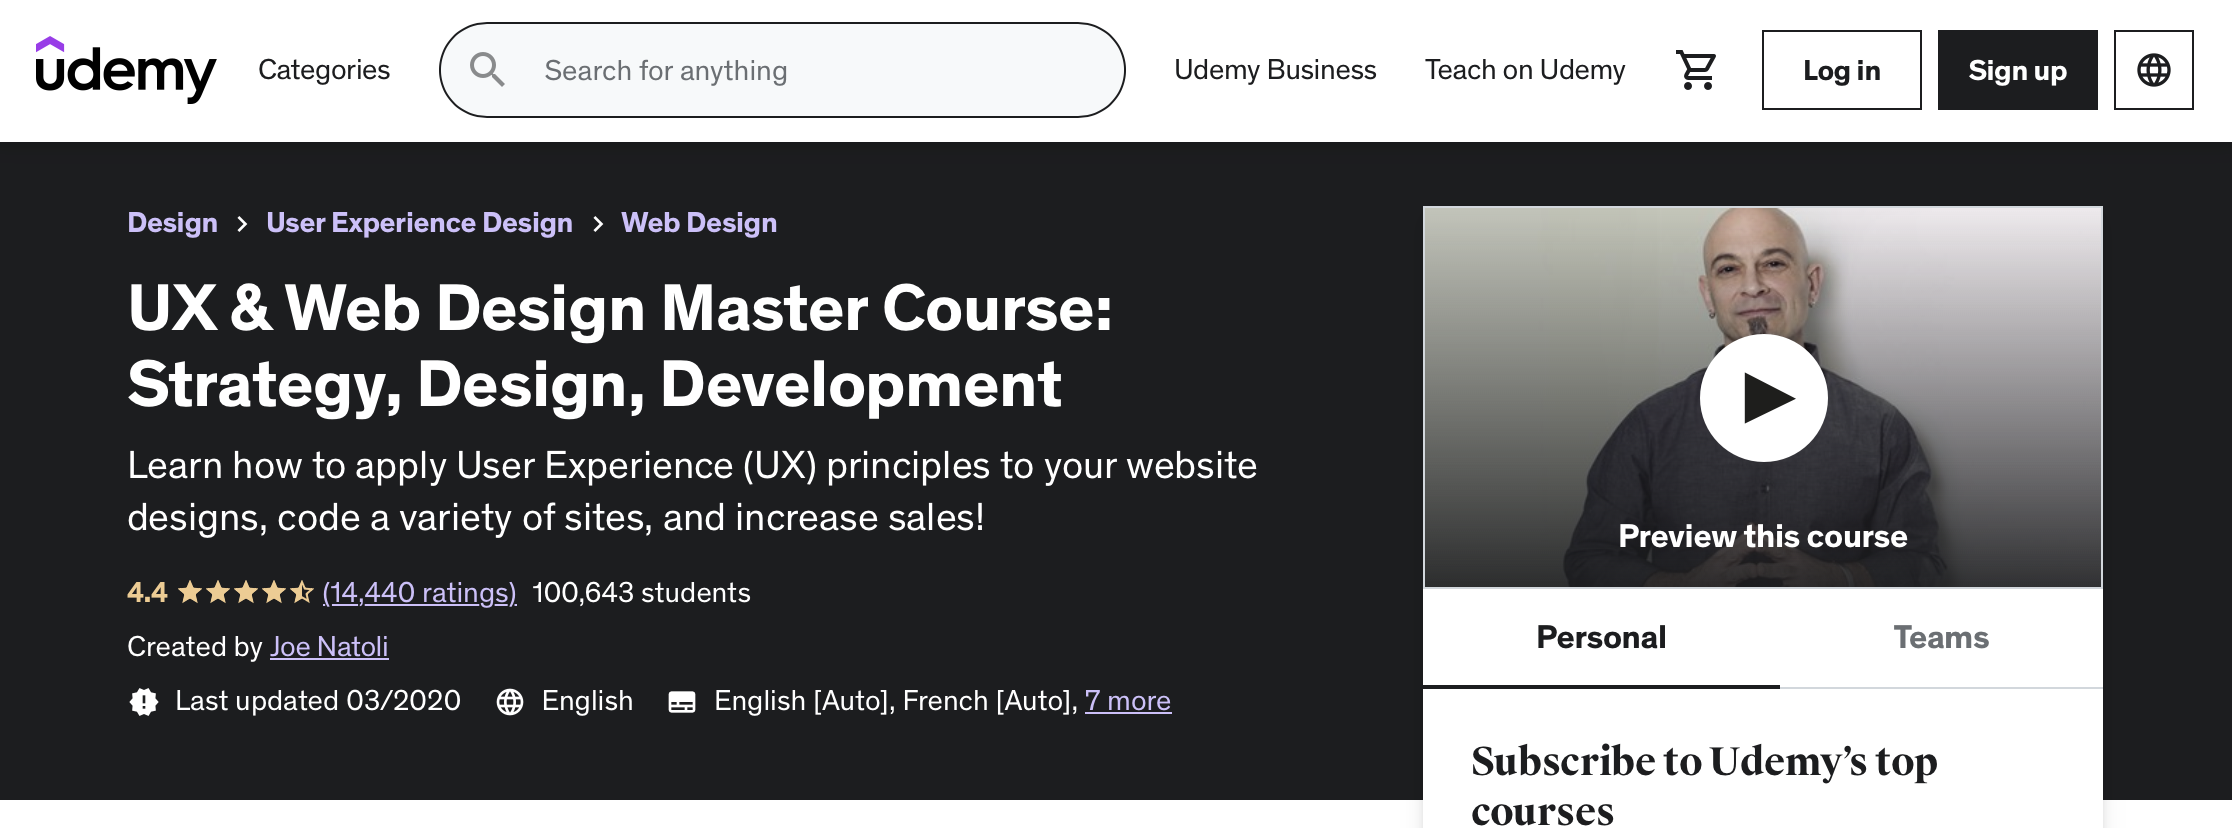 UX and Web Design Mastercourse Strategy, Design, Development